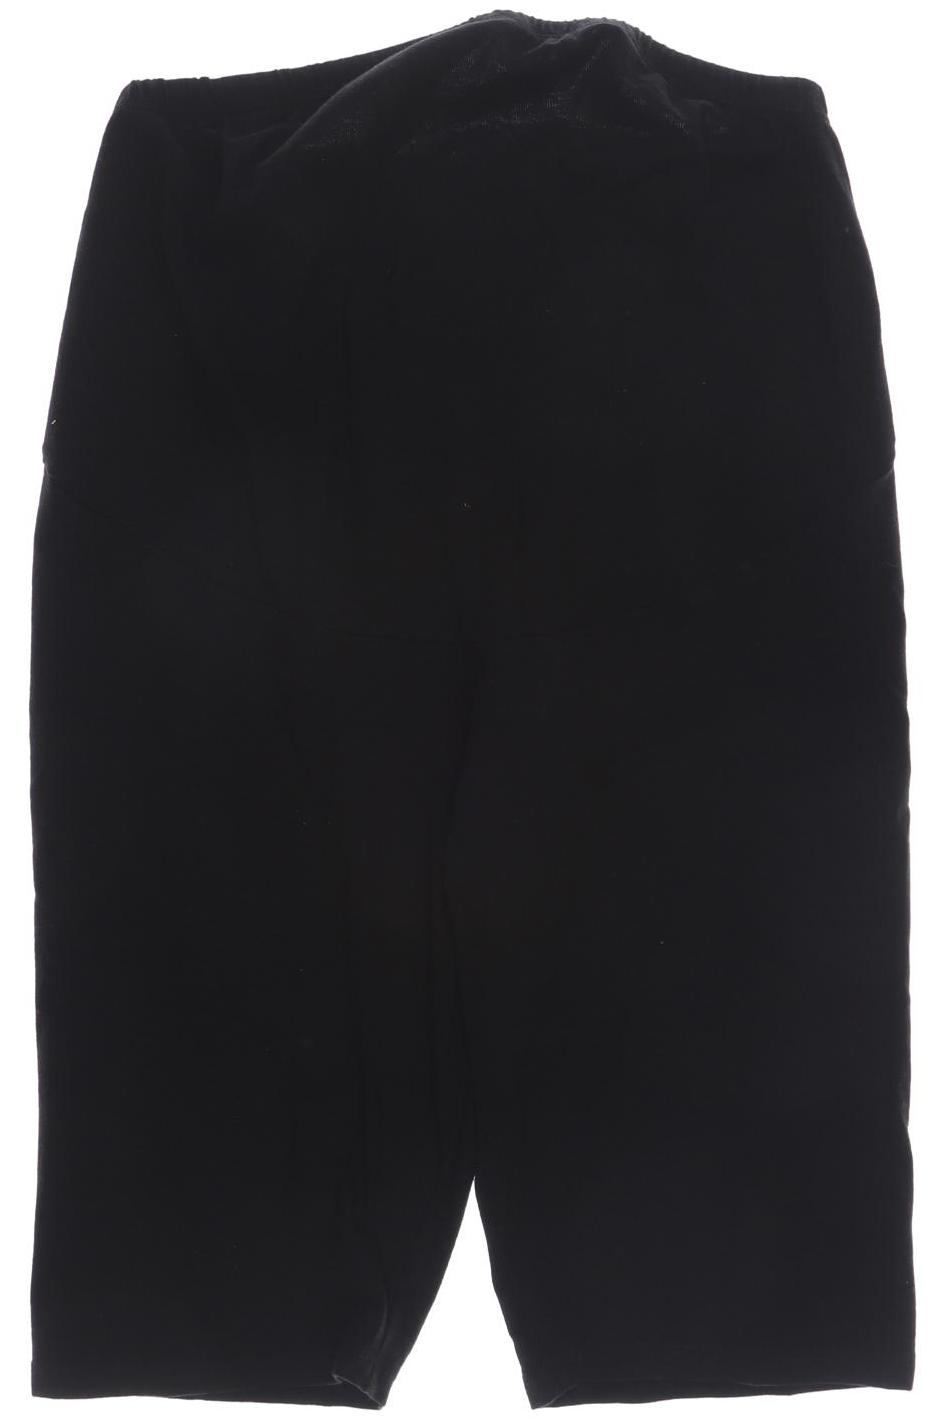 H&M Mama Damen Shorts, schwarz von H&M Mama